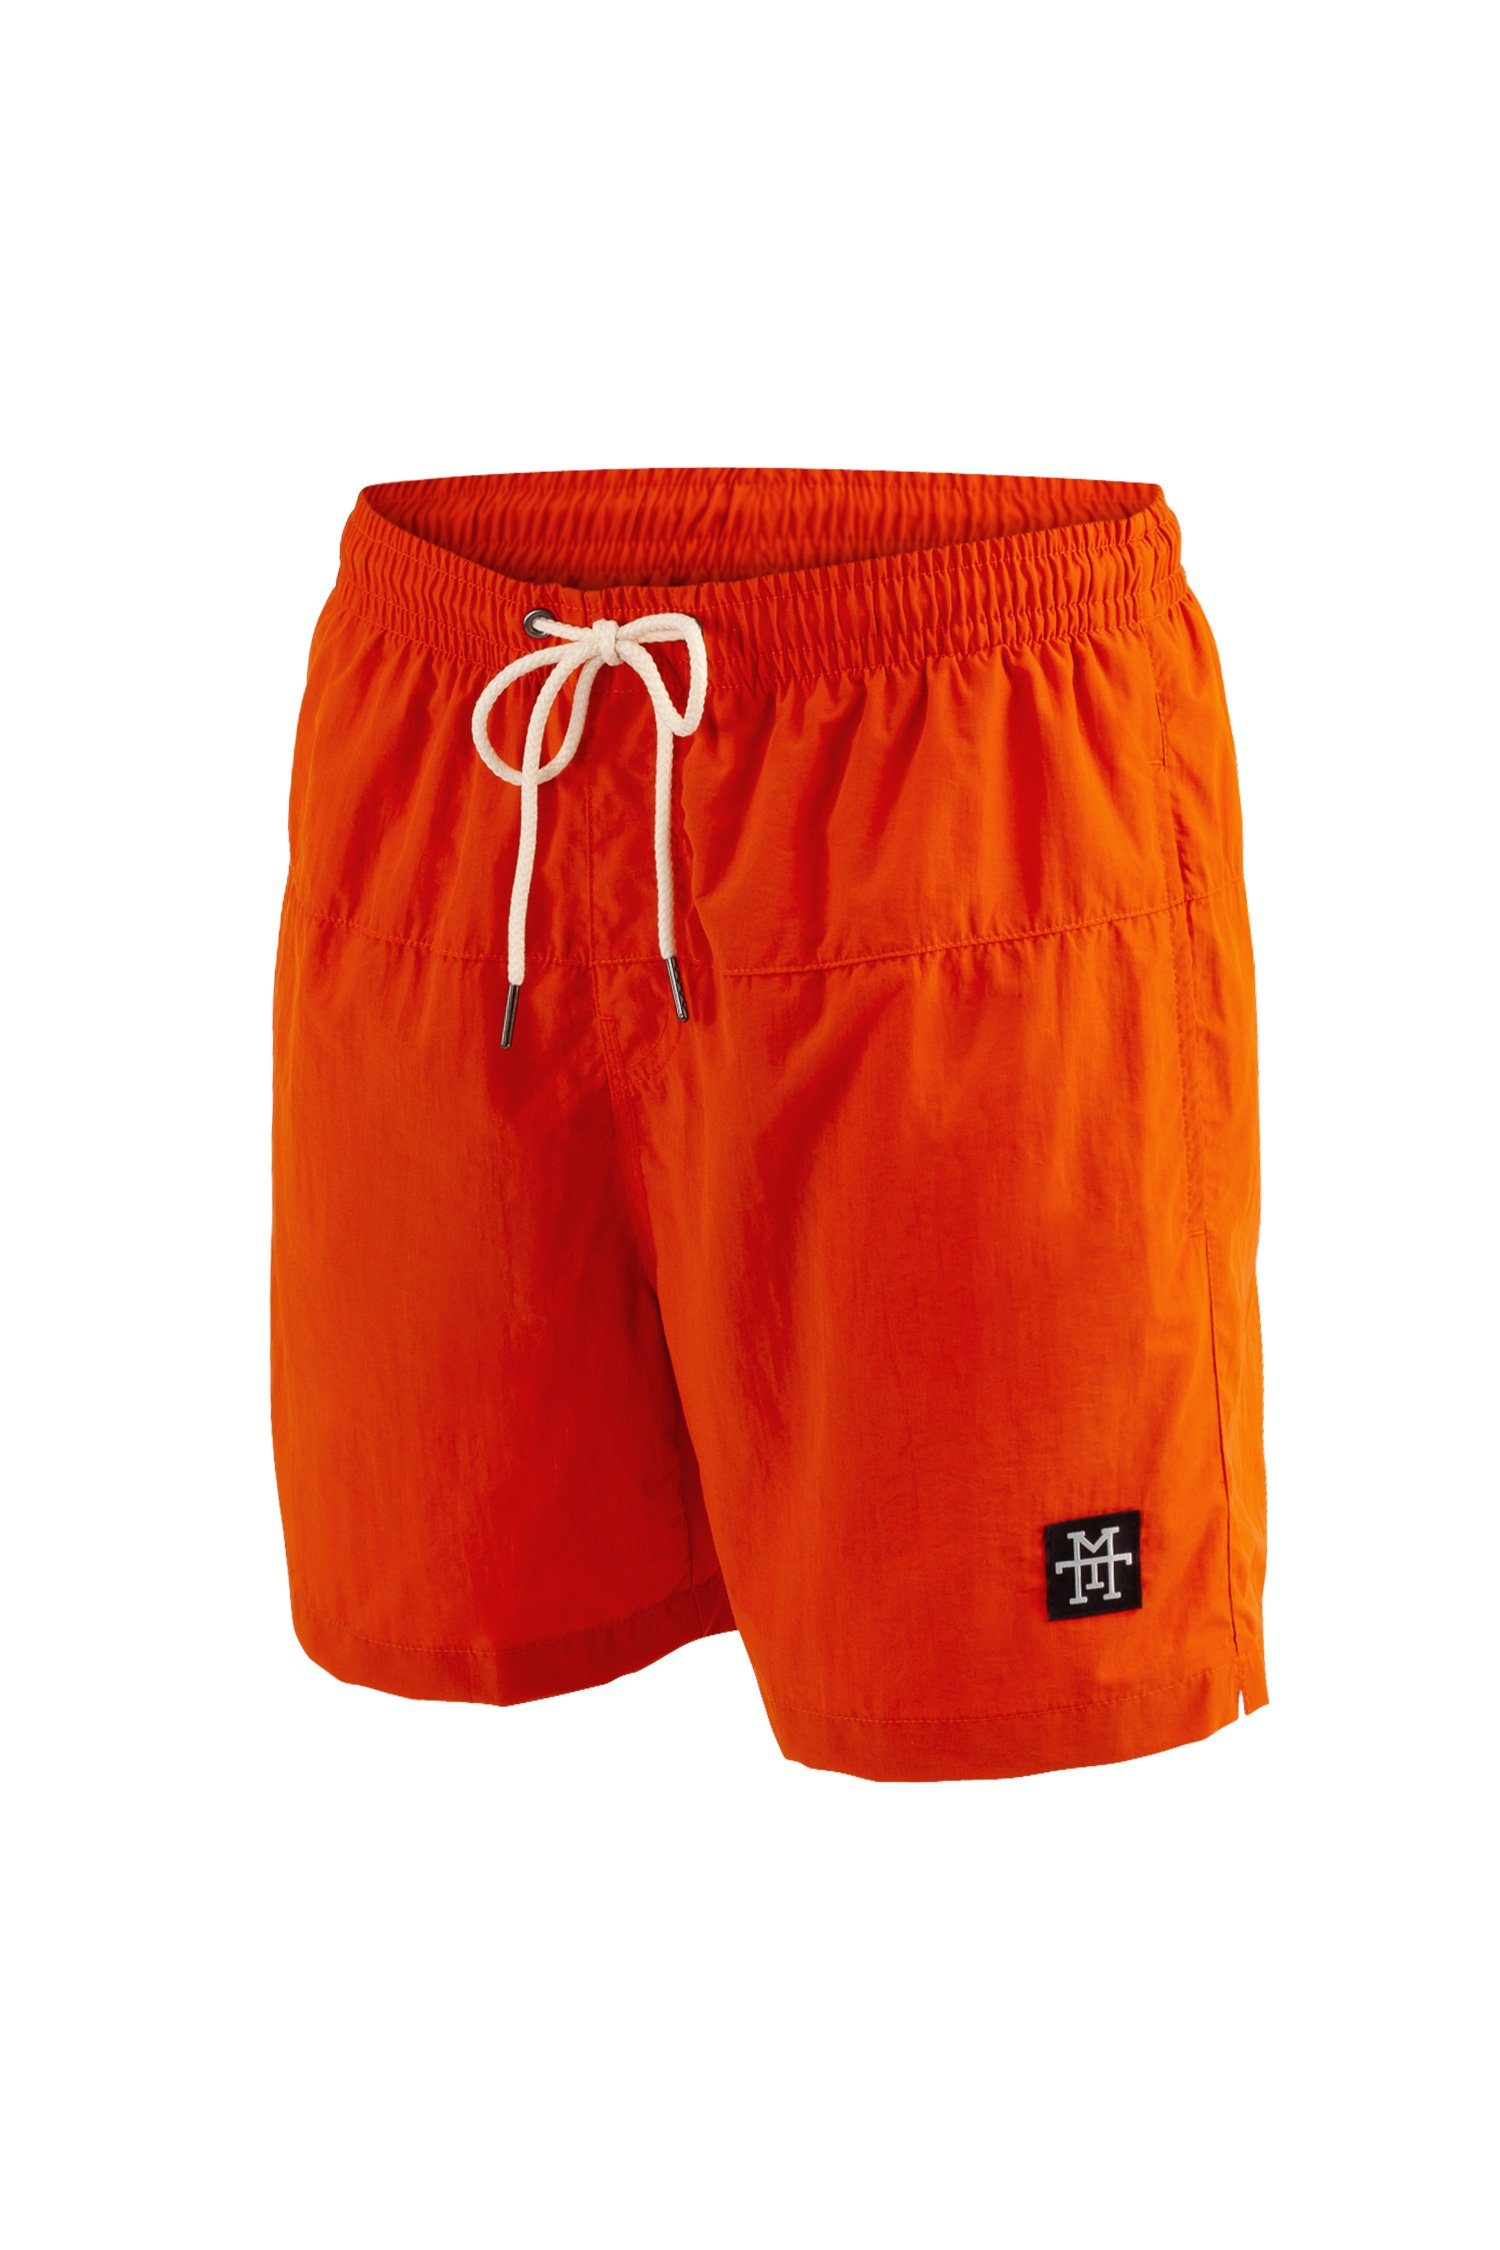 schnelltrocknend Badehosen Manufaktur13 Tangerine Shorts - Swim Badeshorts